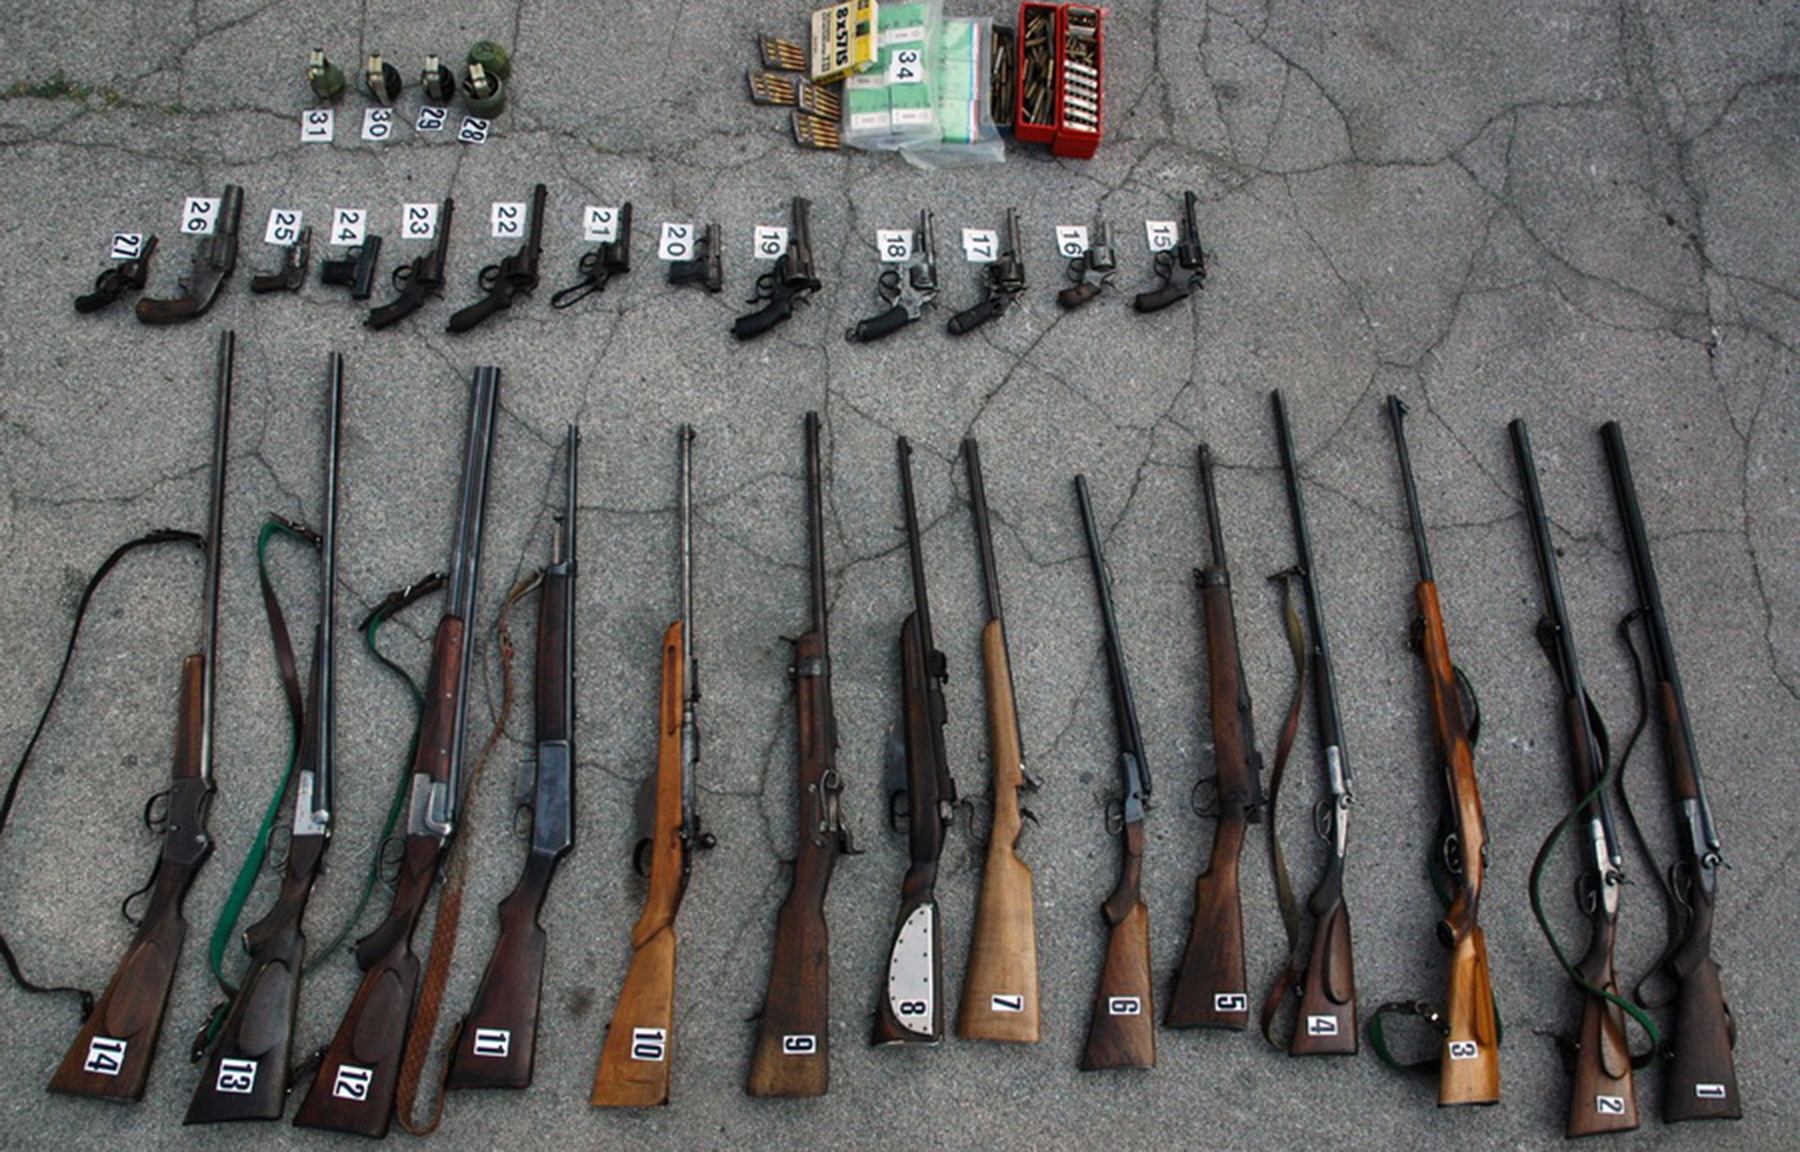 Полиција је у претресу породичне куће пронашла већу количину оружја и муниције